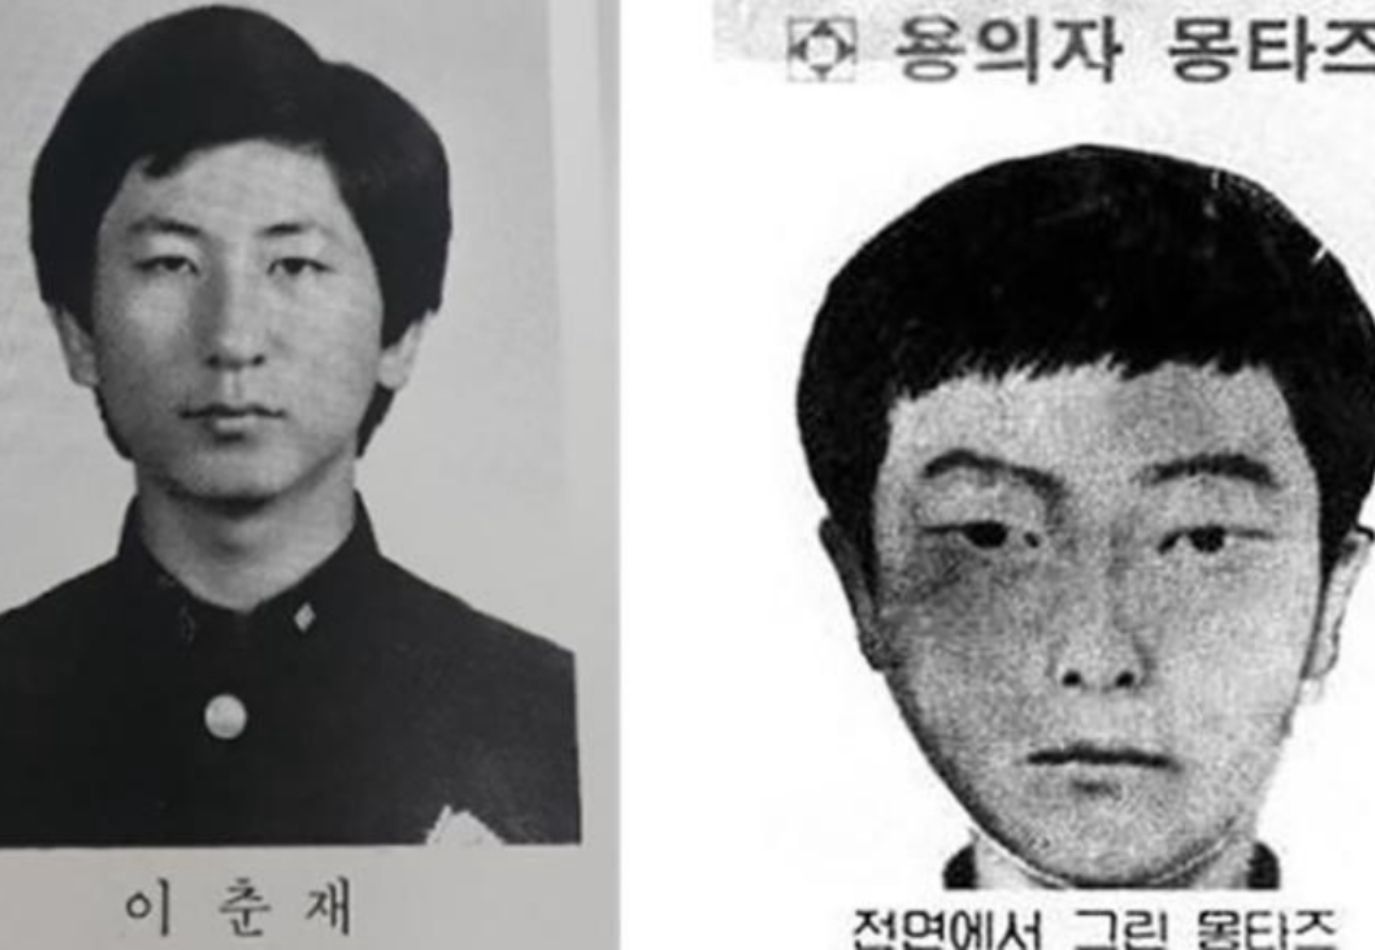 Tajemnicza sprawa morderstw w Korei rozwiązana po 30 latach